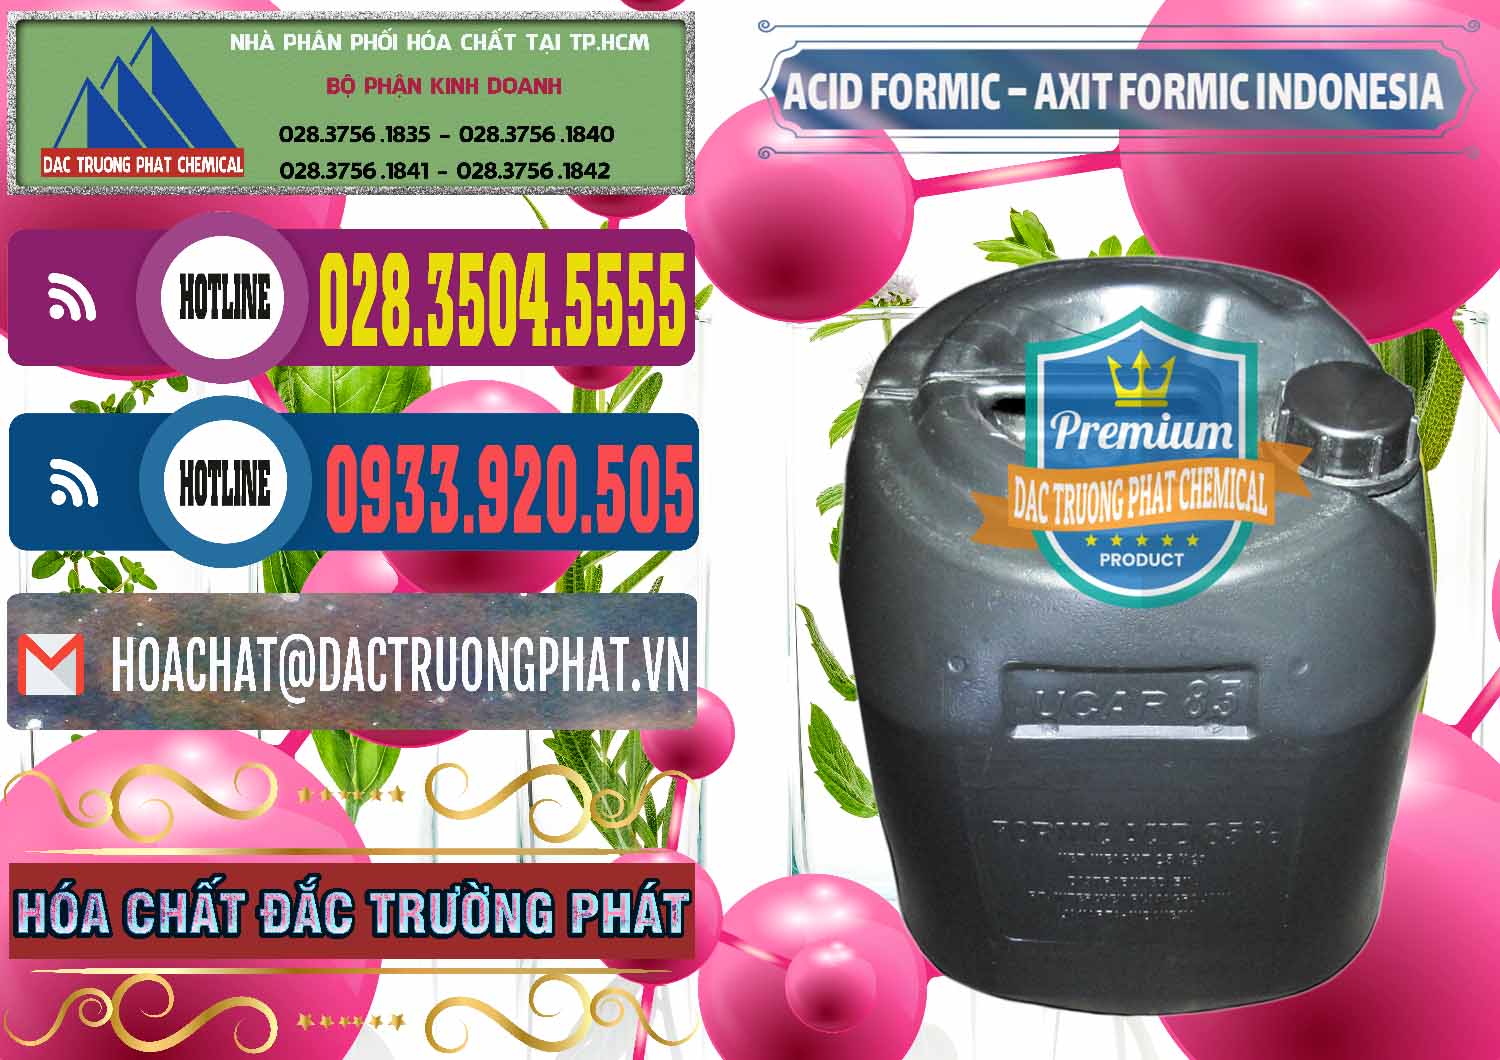 Nơi chuyên cung ứng ( bán ) Acid Formic - Axit Formic Indonesia - 0026 - Đơn vị chuyên cung cấp & nhập khẩu hóa chất tại TP.HCM - muabanhoachat.com.vn